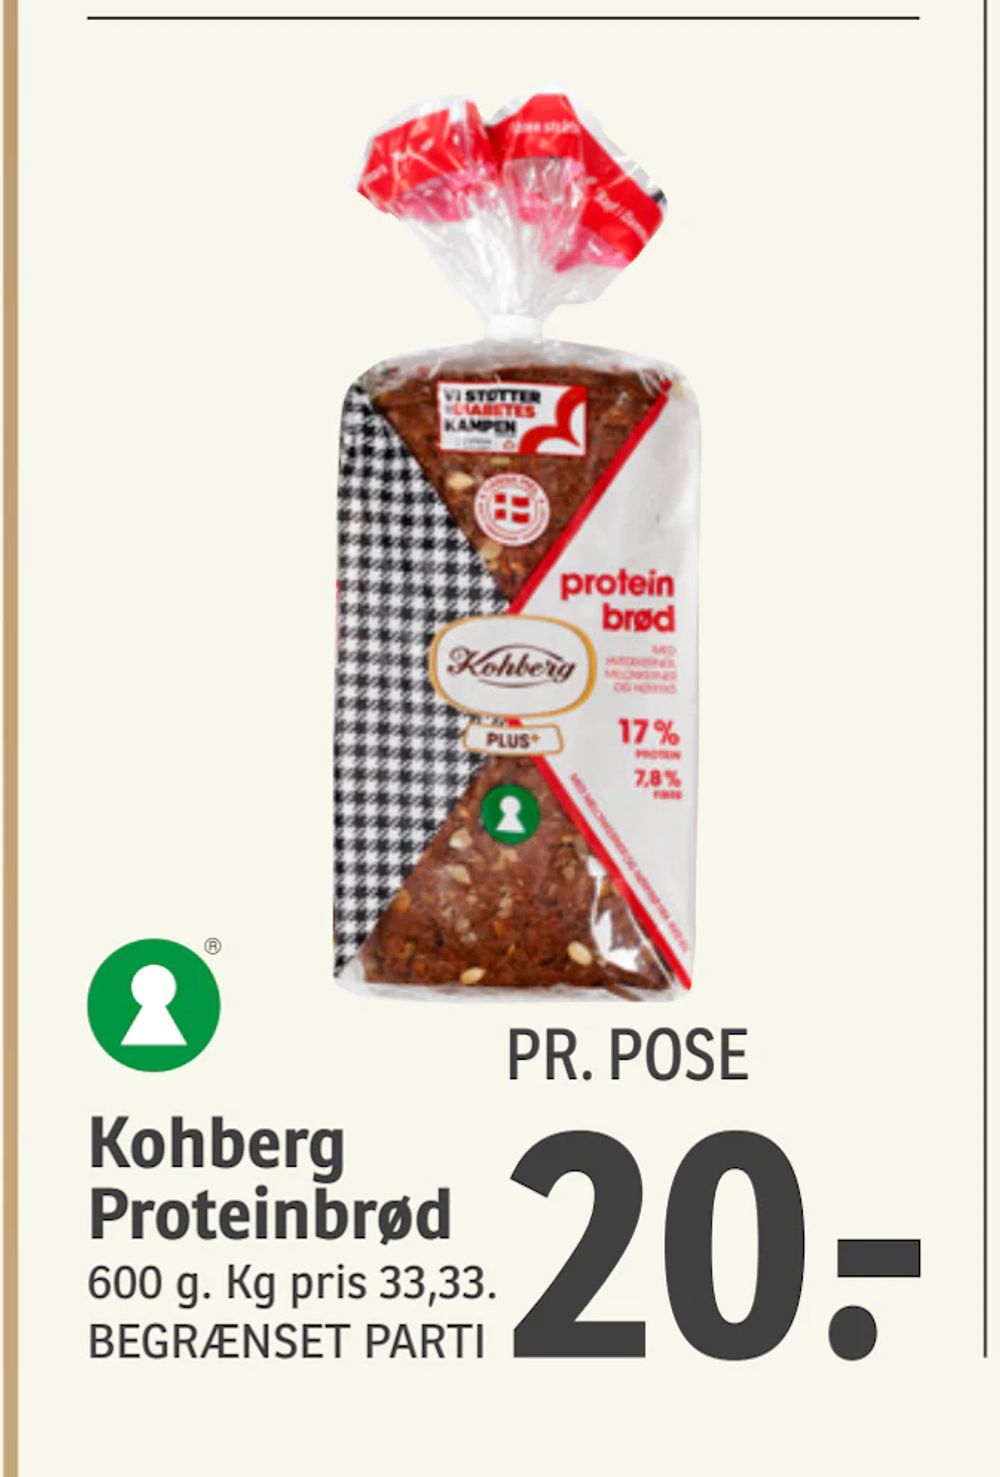 Tilbud på Kohberg Proteinbrød fra SPAR til 20 kr.